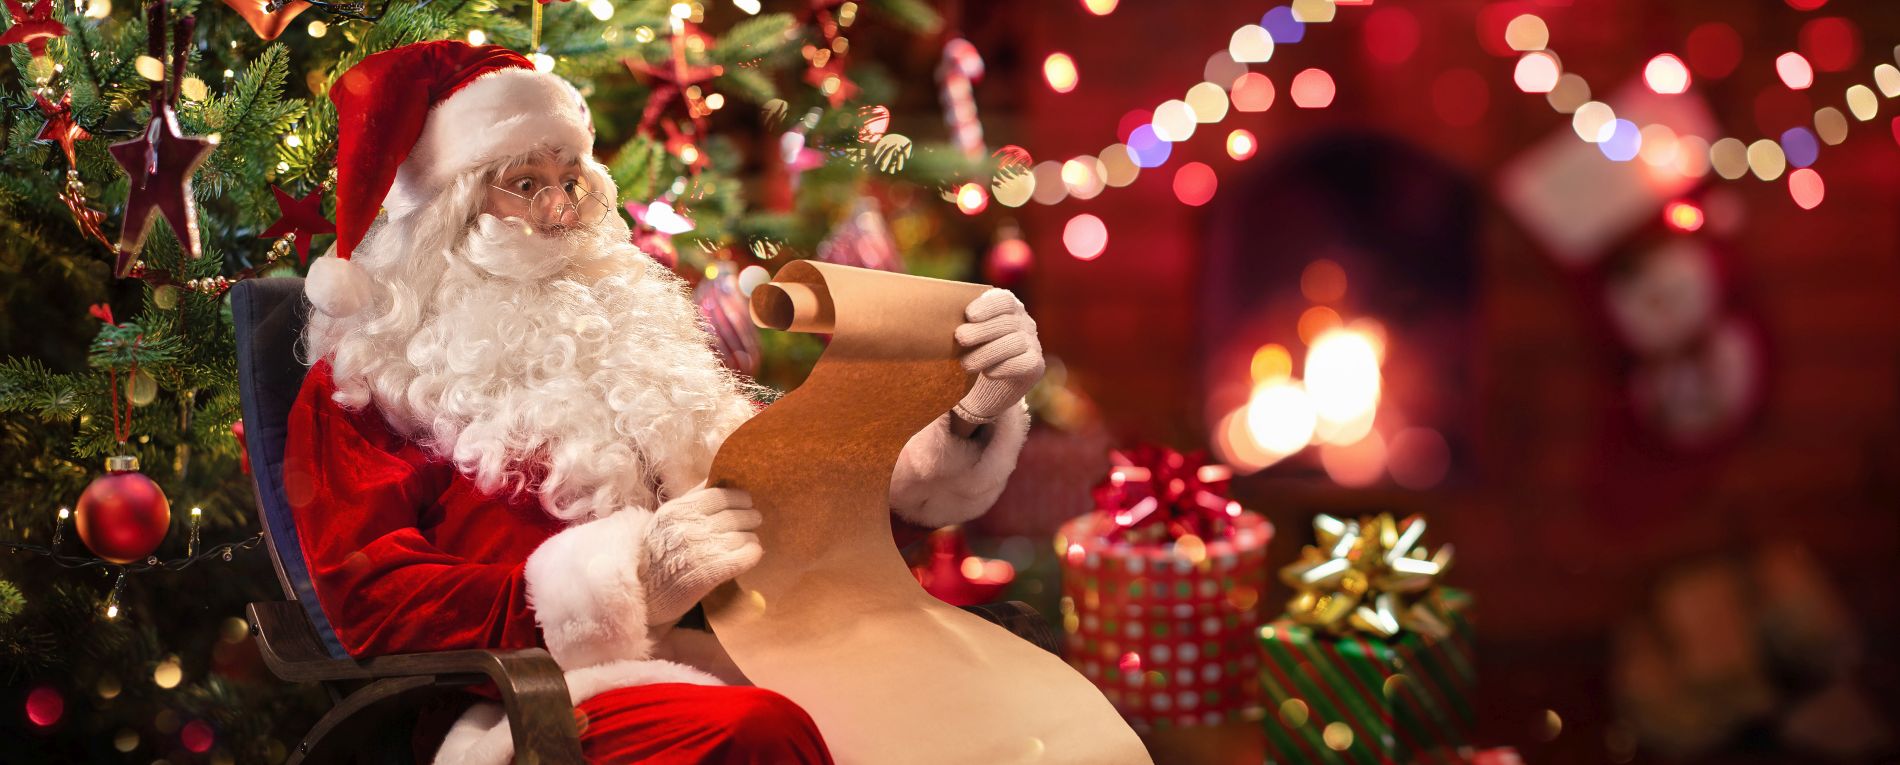 Photo du Père Noël lisant une liste de jouets à fabriquer